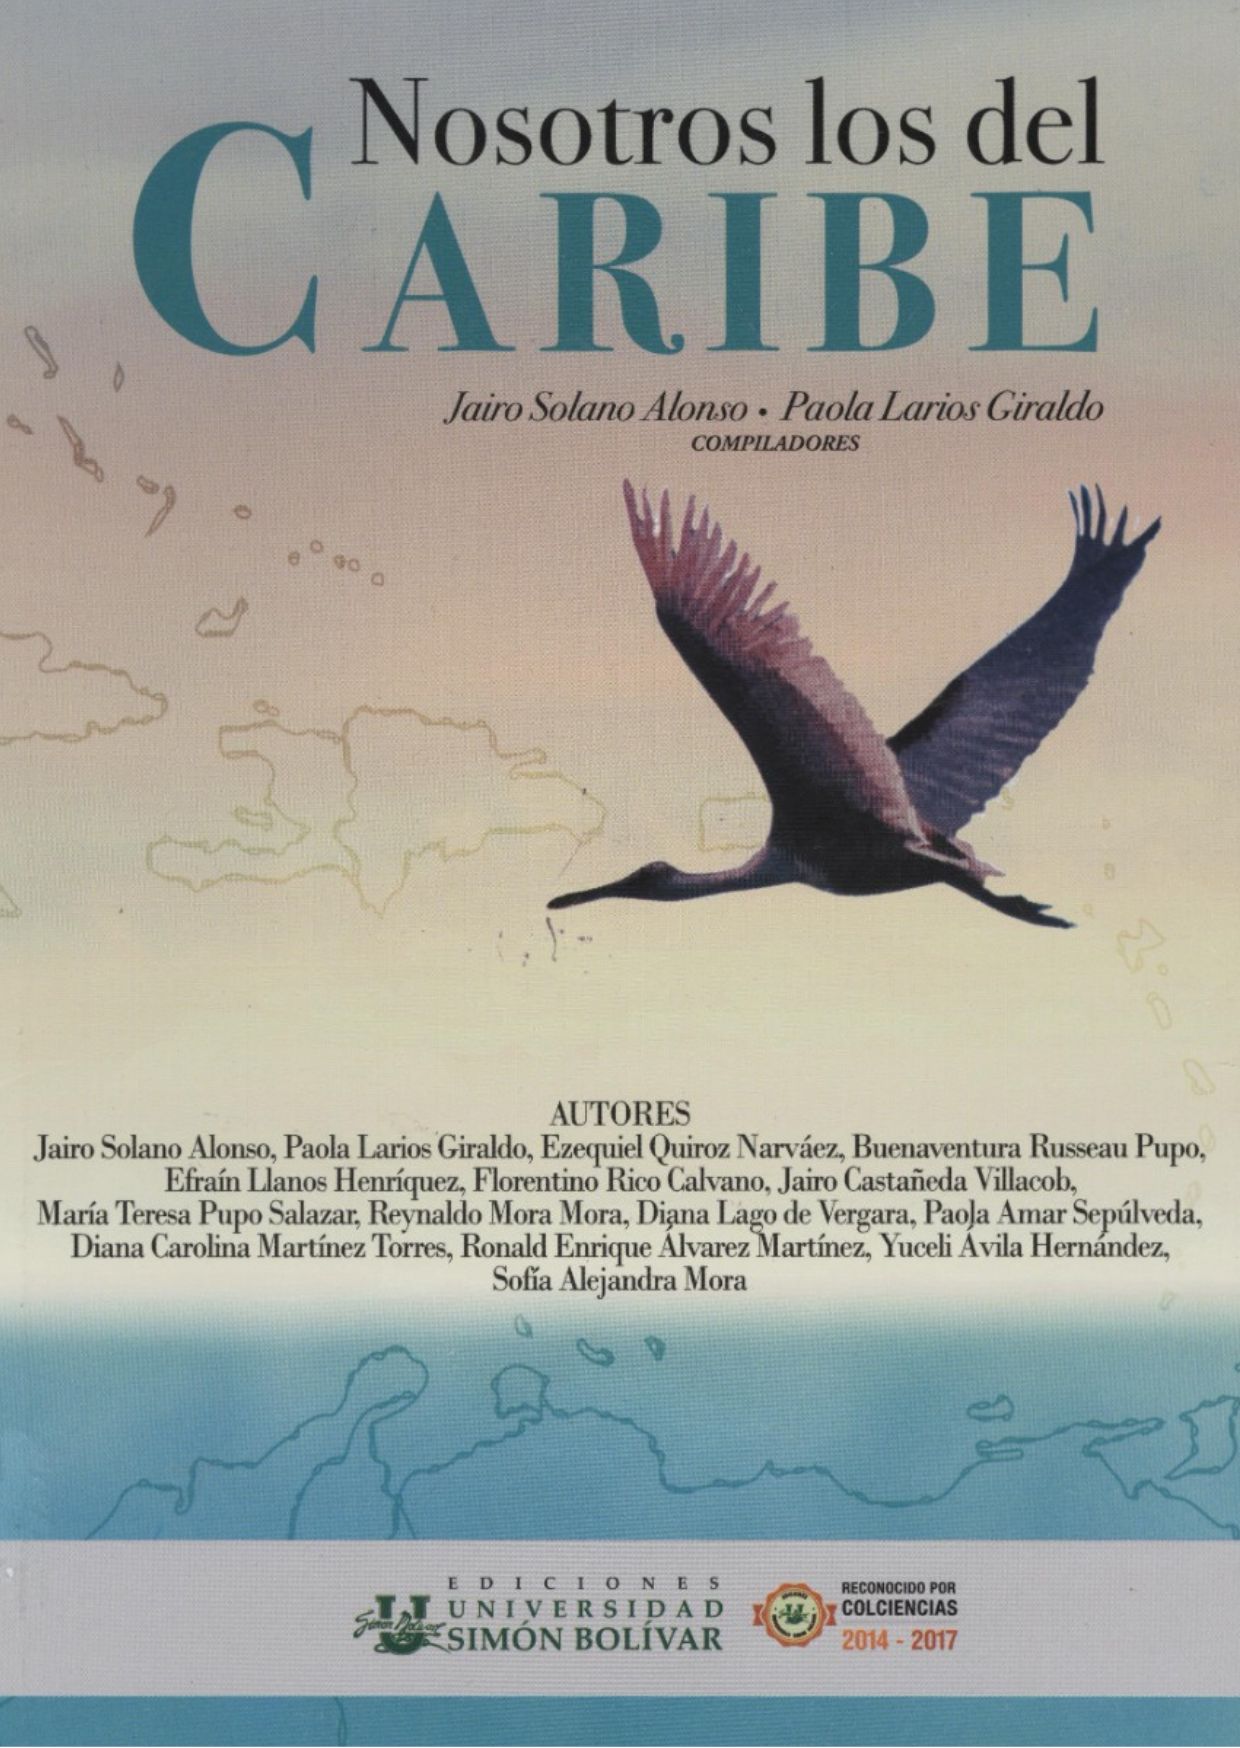 Esta es una foto de la portada del libro Nosotros los del Caribe